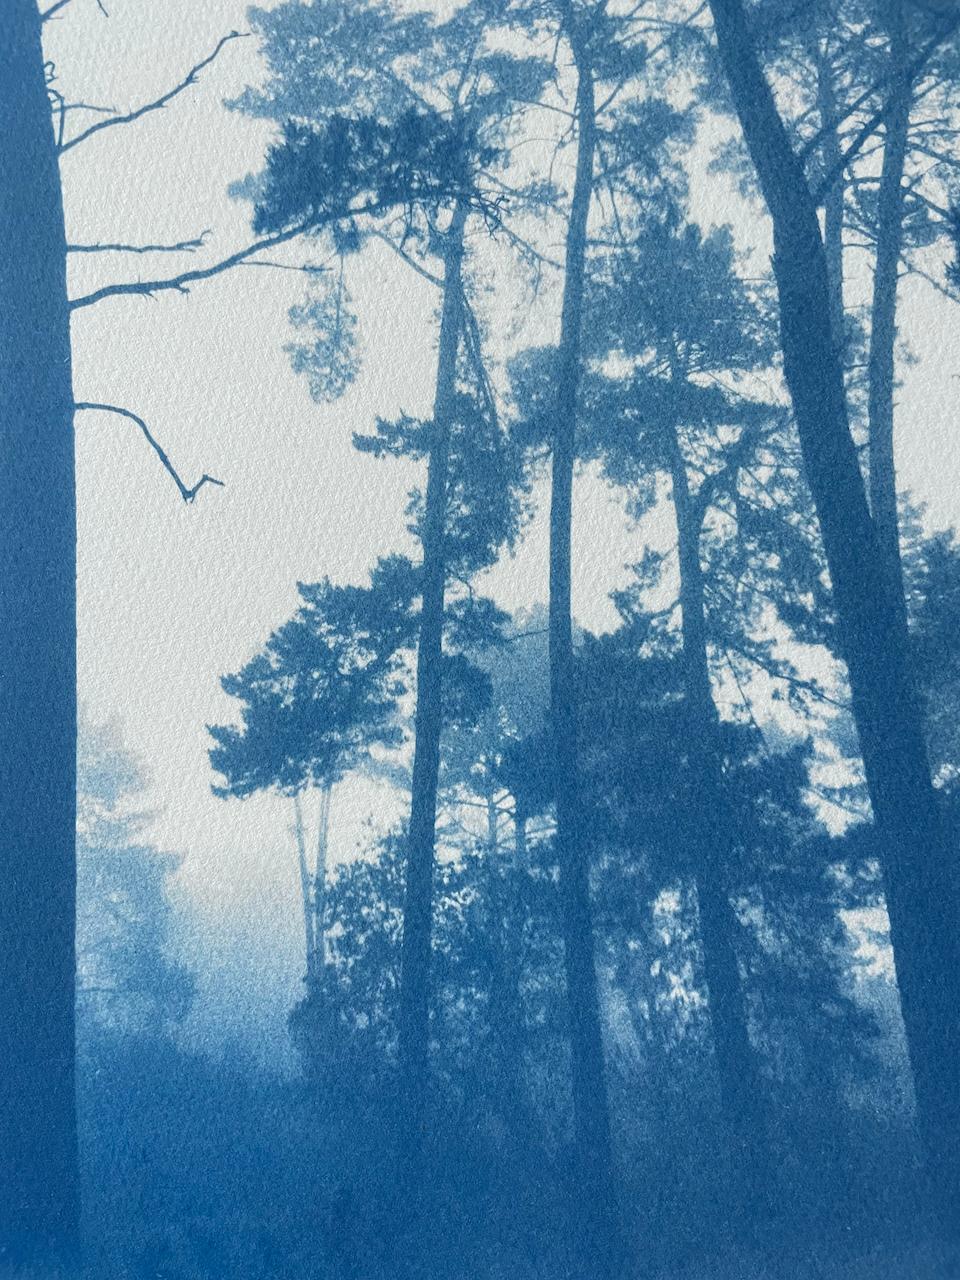 Schlanke Kiefern (Handbedruckte Cyanotypie,  18 x 12 Zoll) – Photograph von Christine So